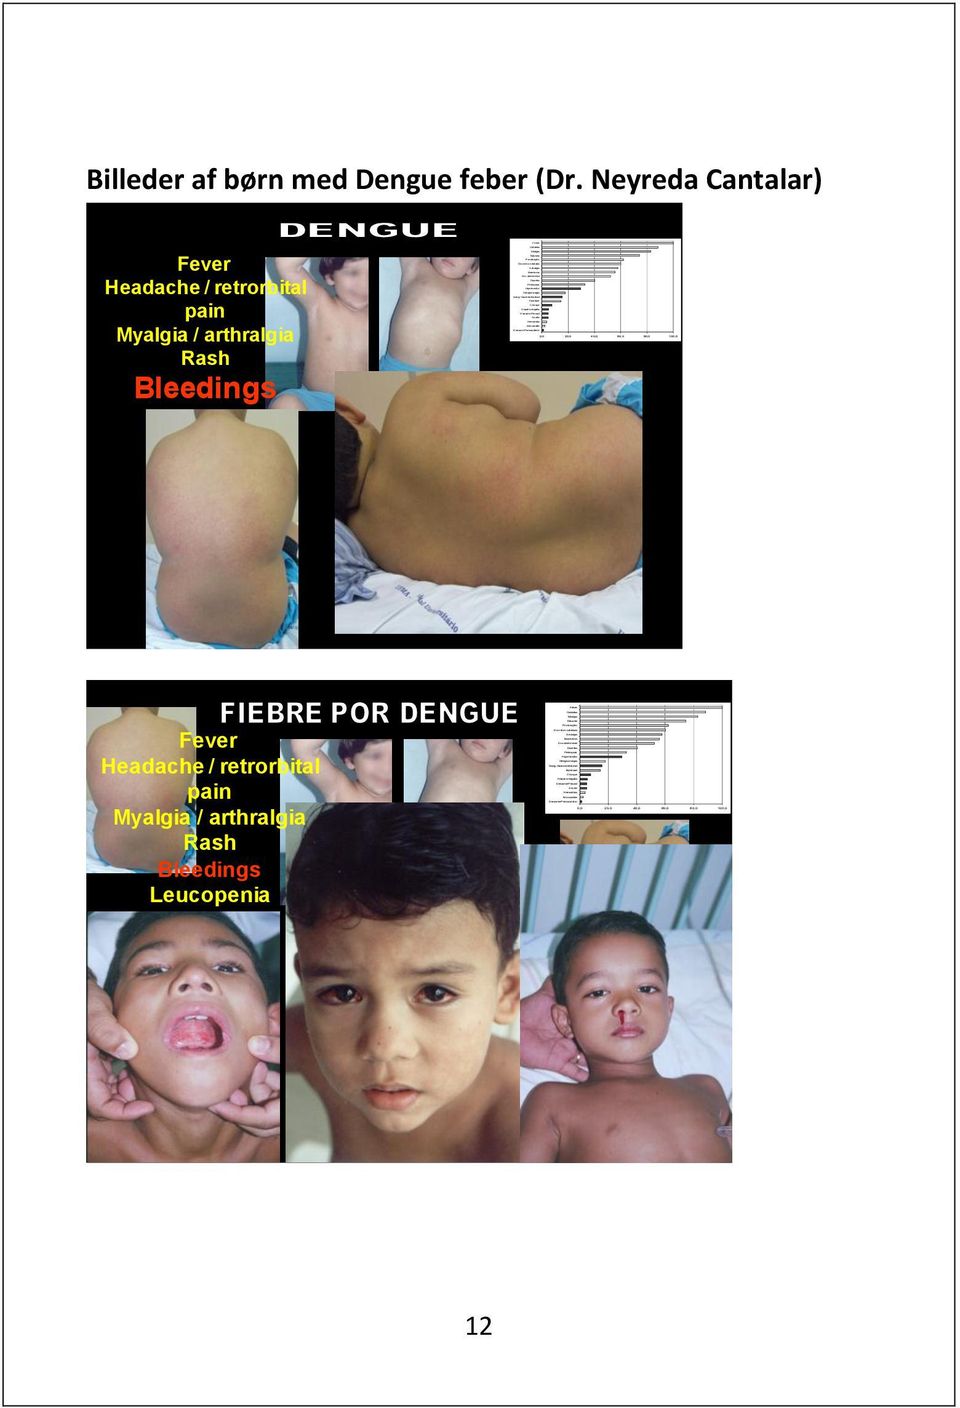 Derrame Pleural Ascite Hematúria Miocardite Derrame Pericavitário 0,0 20,0 40,0 60,0 80,0 100,0 Billeder af børn med Dengue feber (Dr.